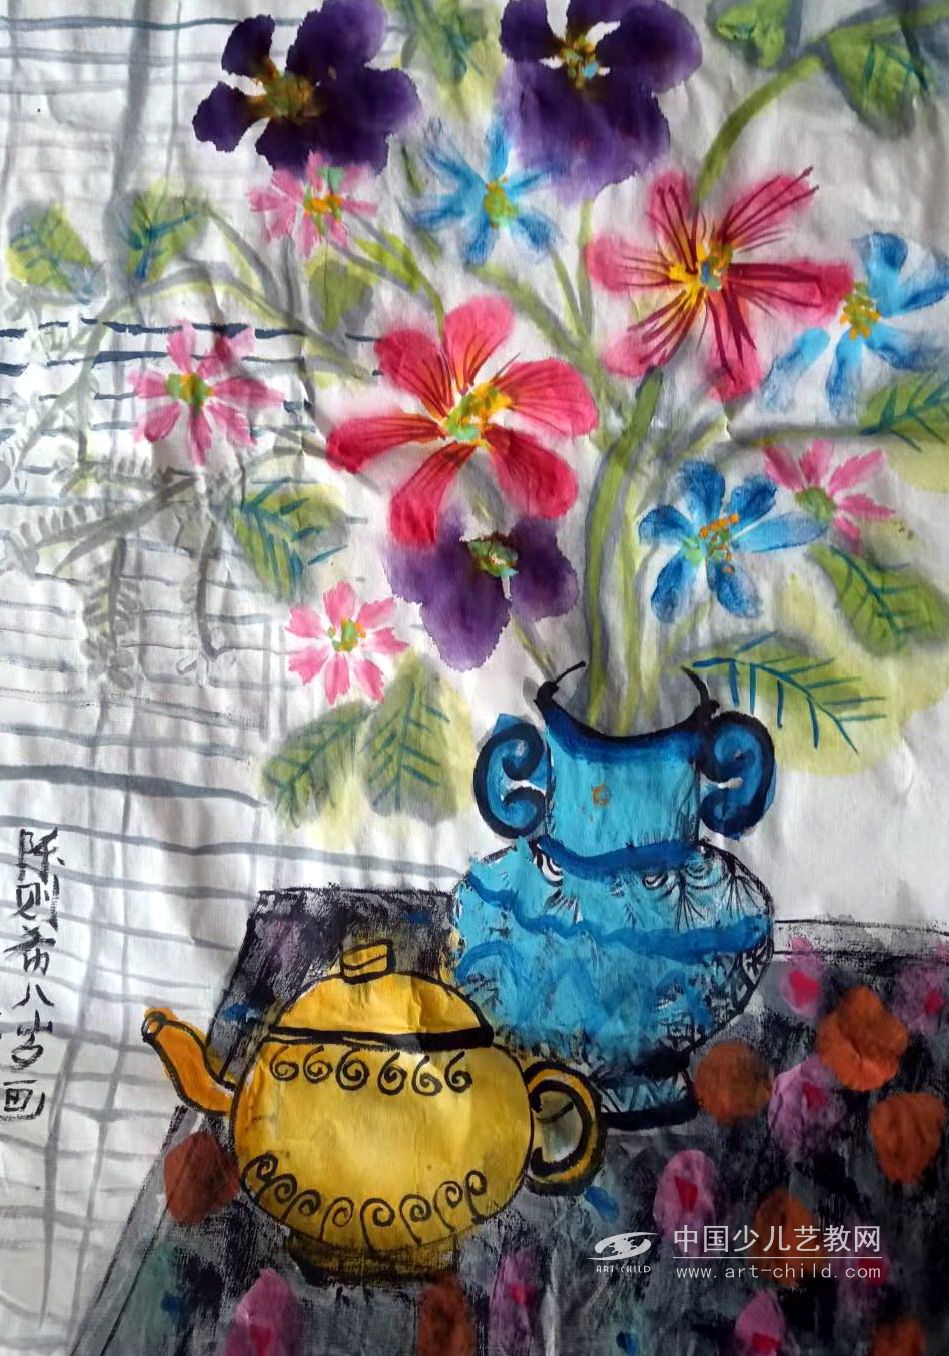 花瓶—《少儿画苑》国际少儿书画大赛作品赏析